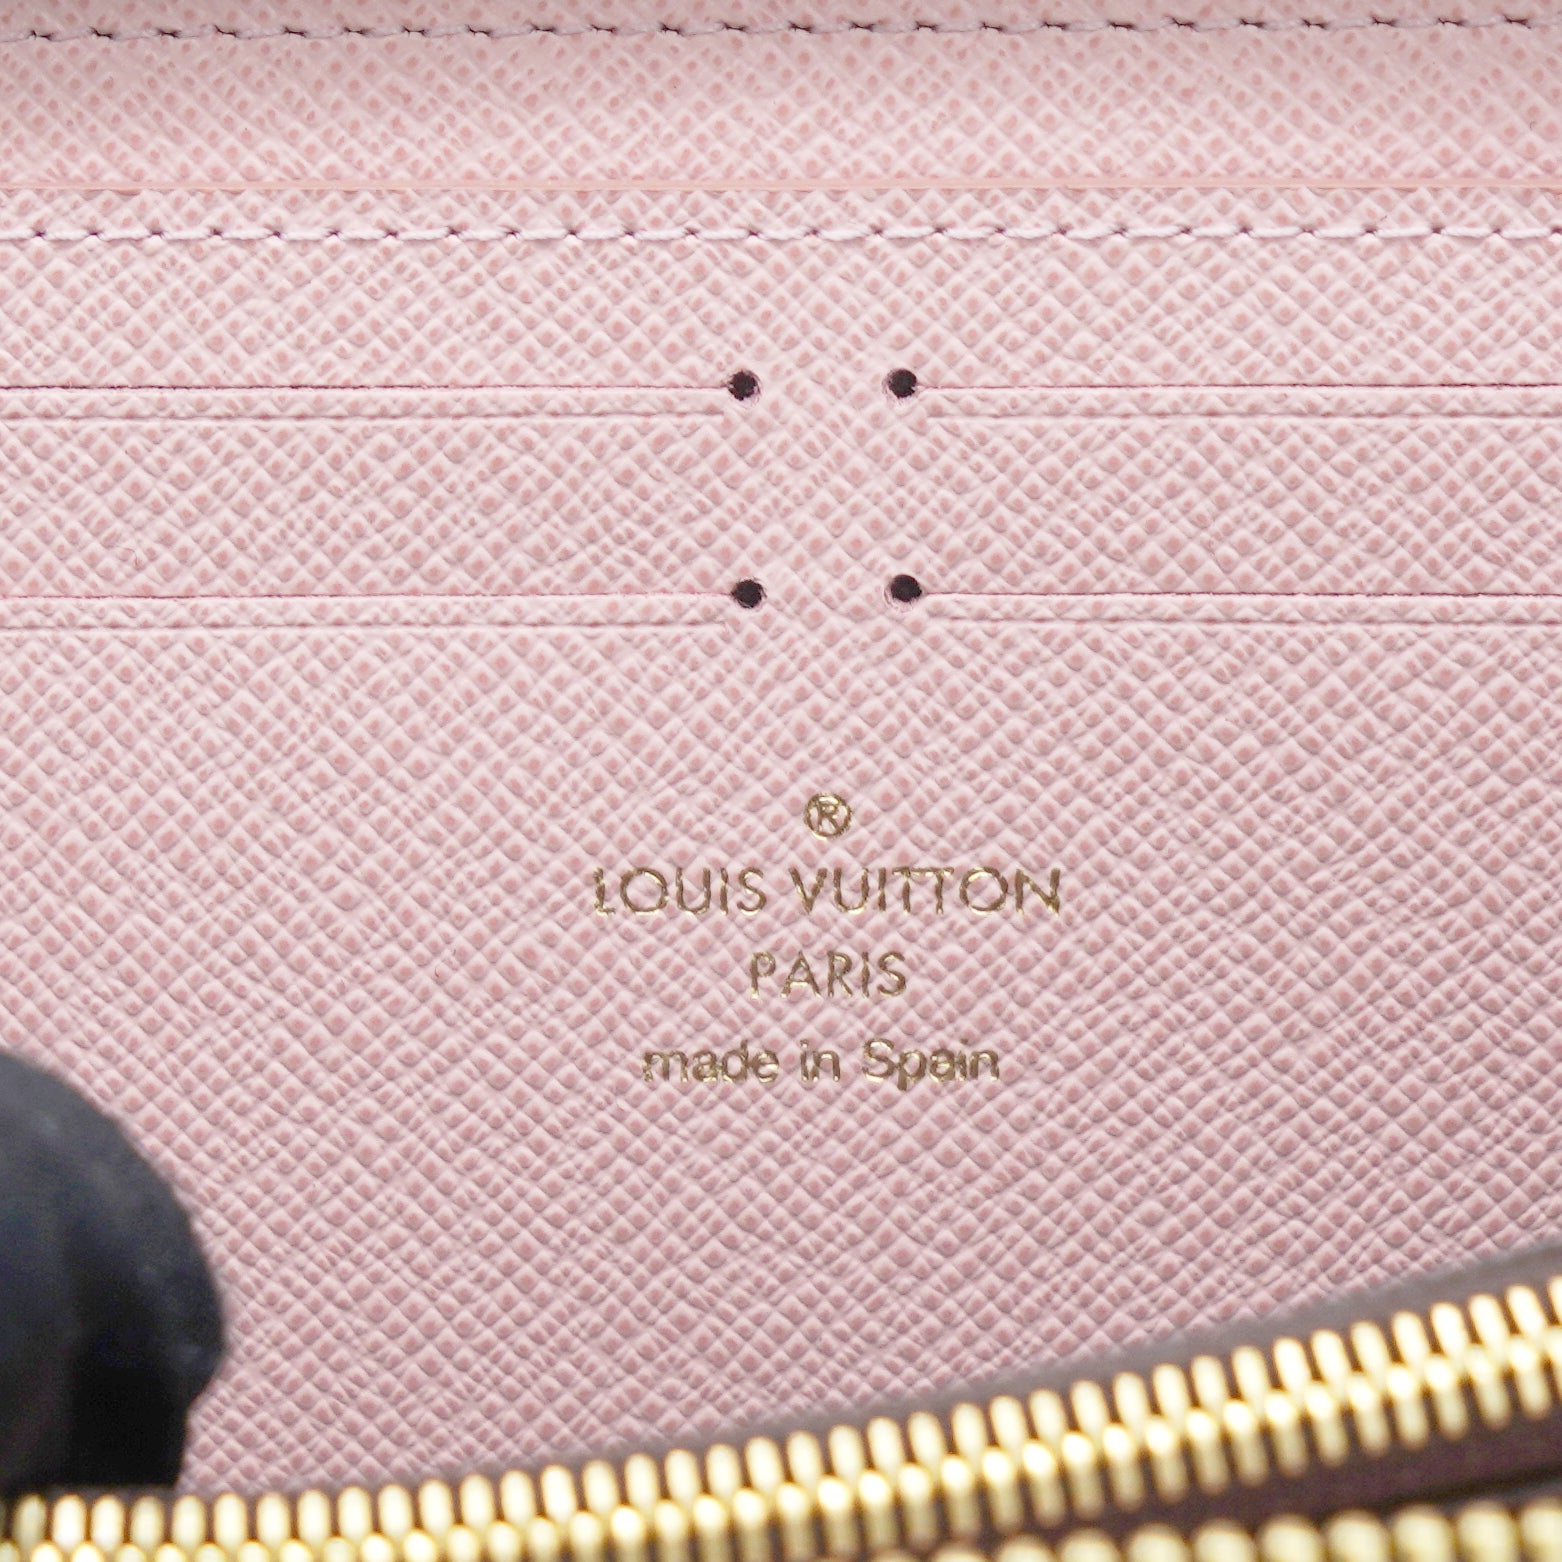 .com: Louis Vuitton Clemence Wallet Monogram Canvas (Rose